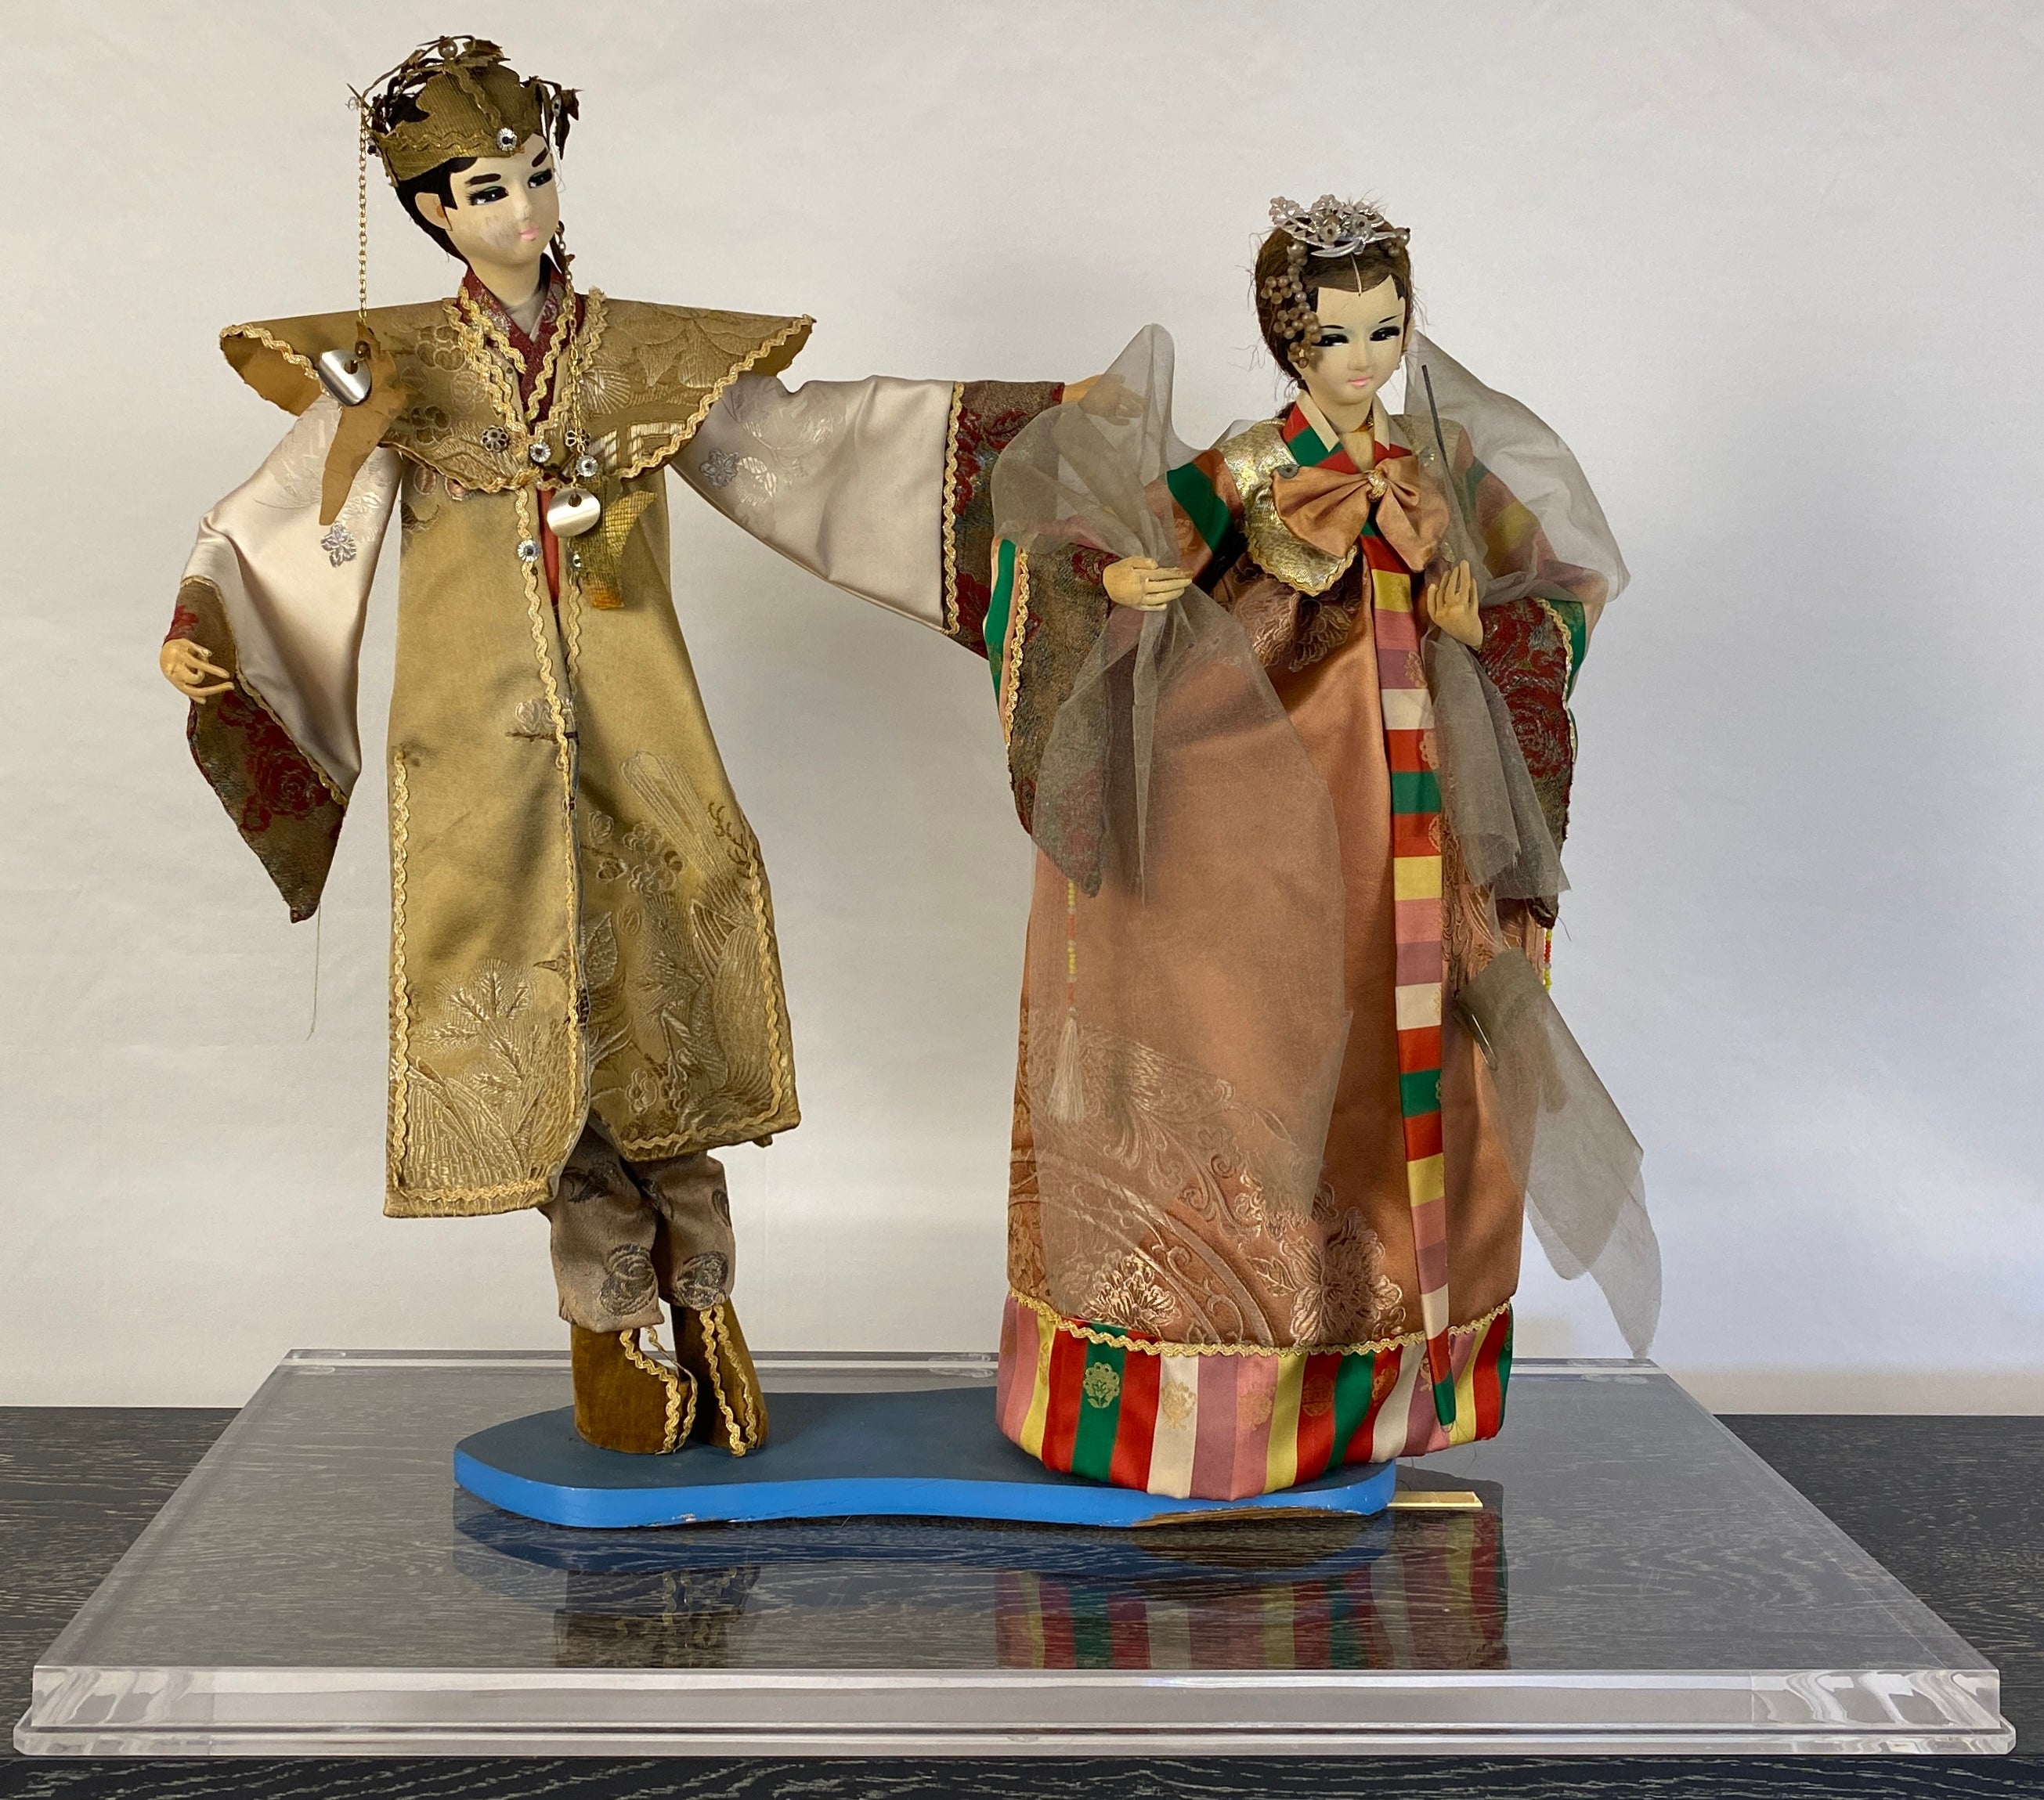 Ein hochwertiges Paar orientalischer Puppen des 20. Jahrhunderts mit Originalkostümen.

Diese dekorativen orientalischen Puppen sind mit einem Rahmen aus Lucit versehen, so dass sie leicht auf einem Tisch, einer Konsole oder einem Regal präsentiert